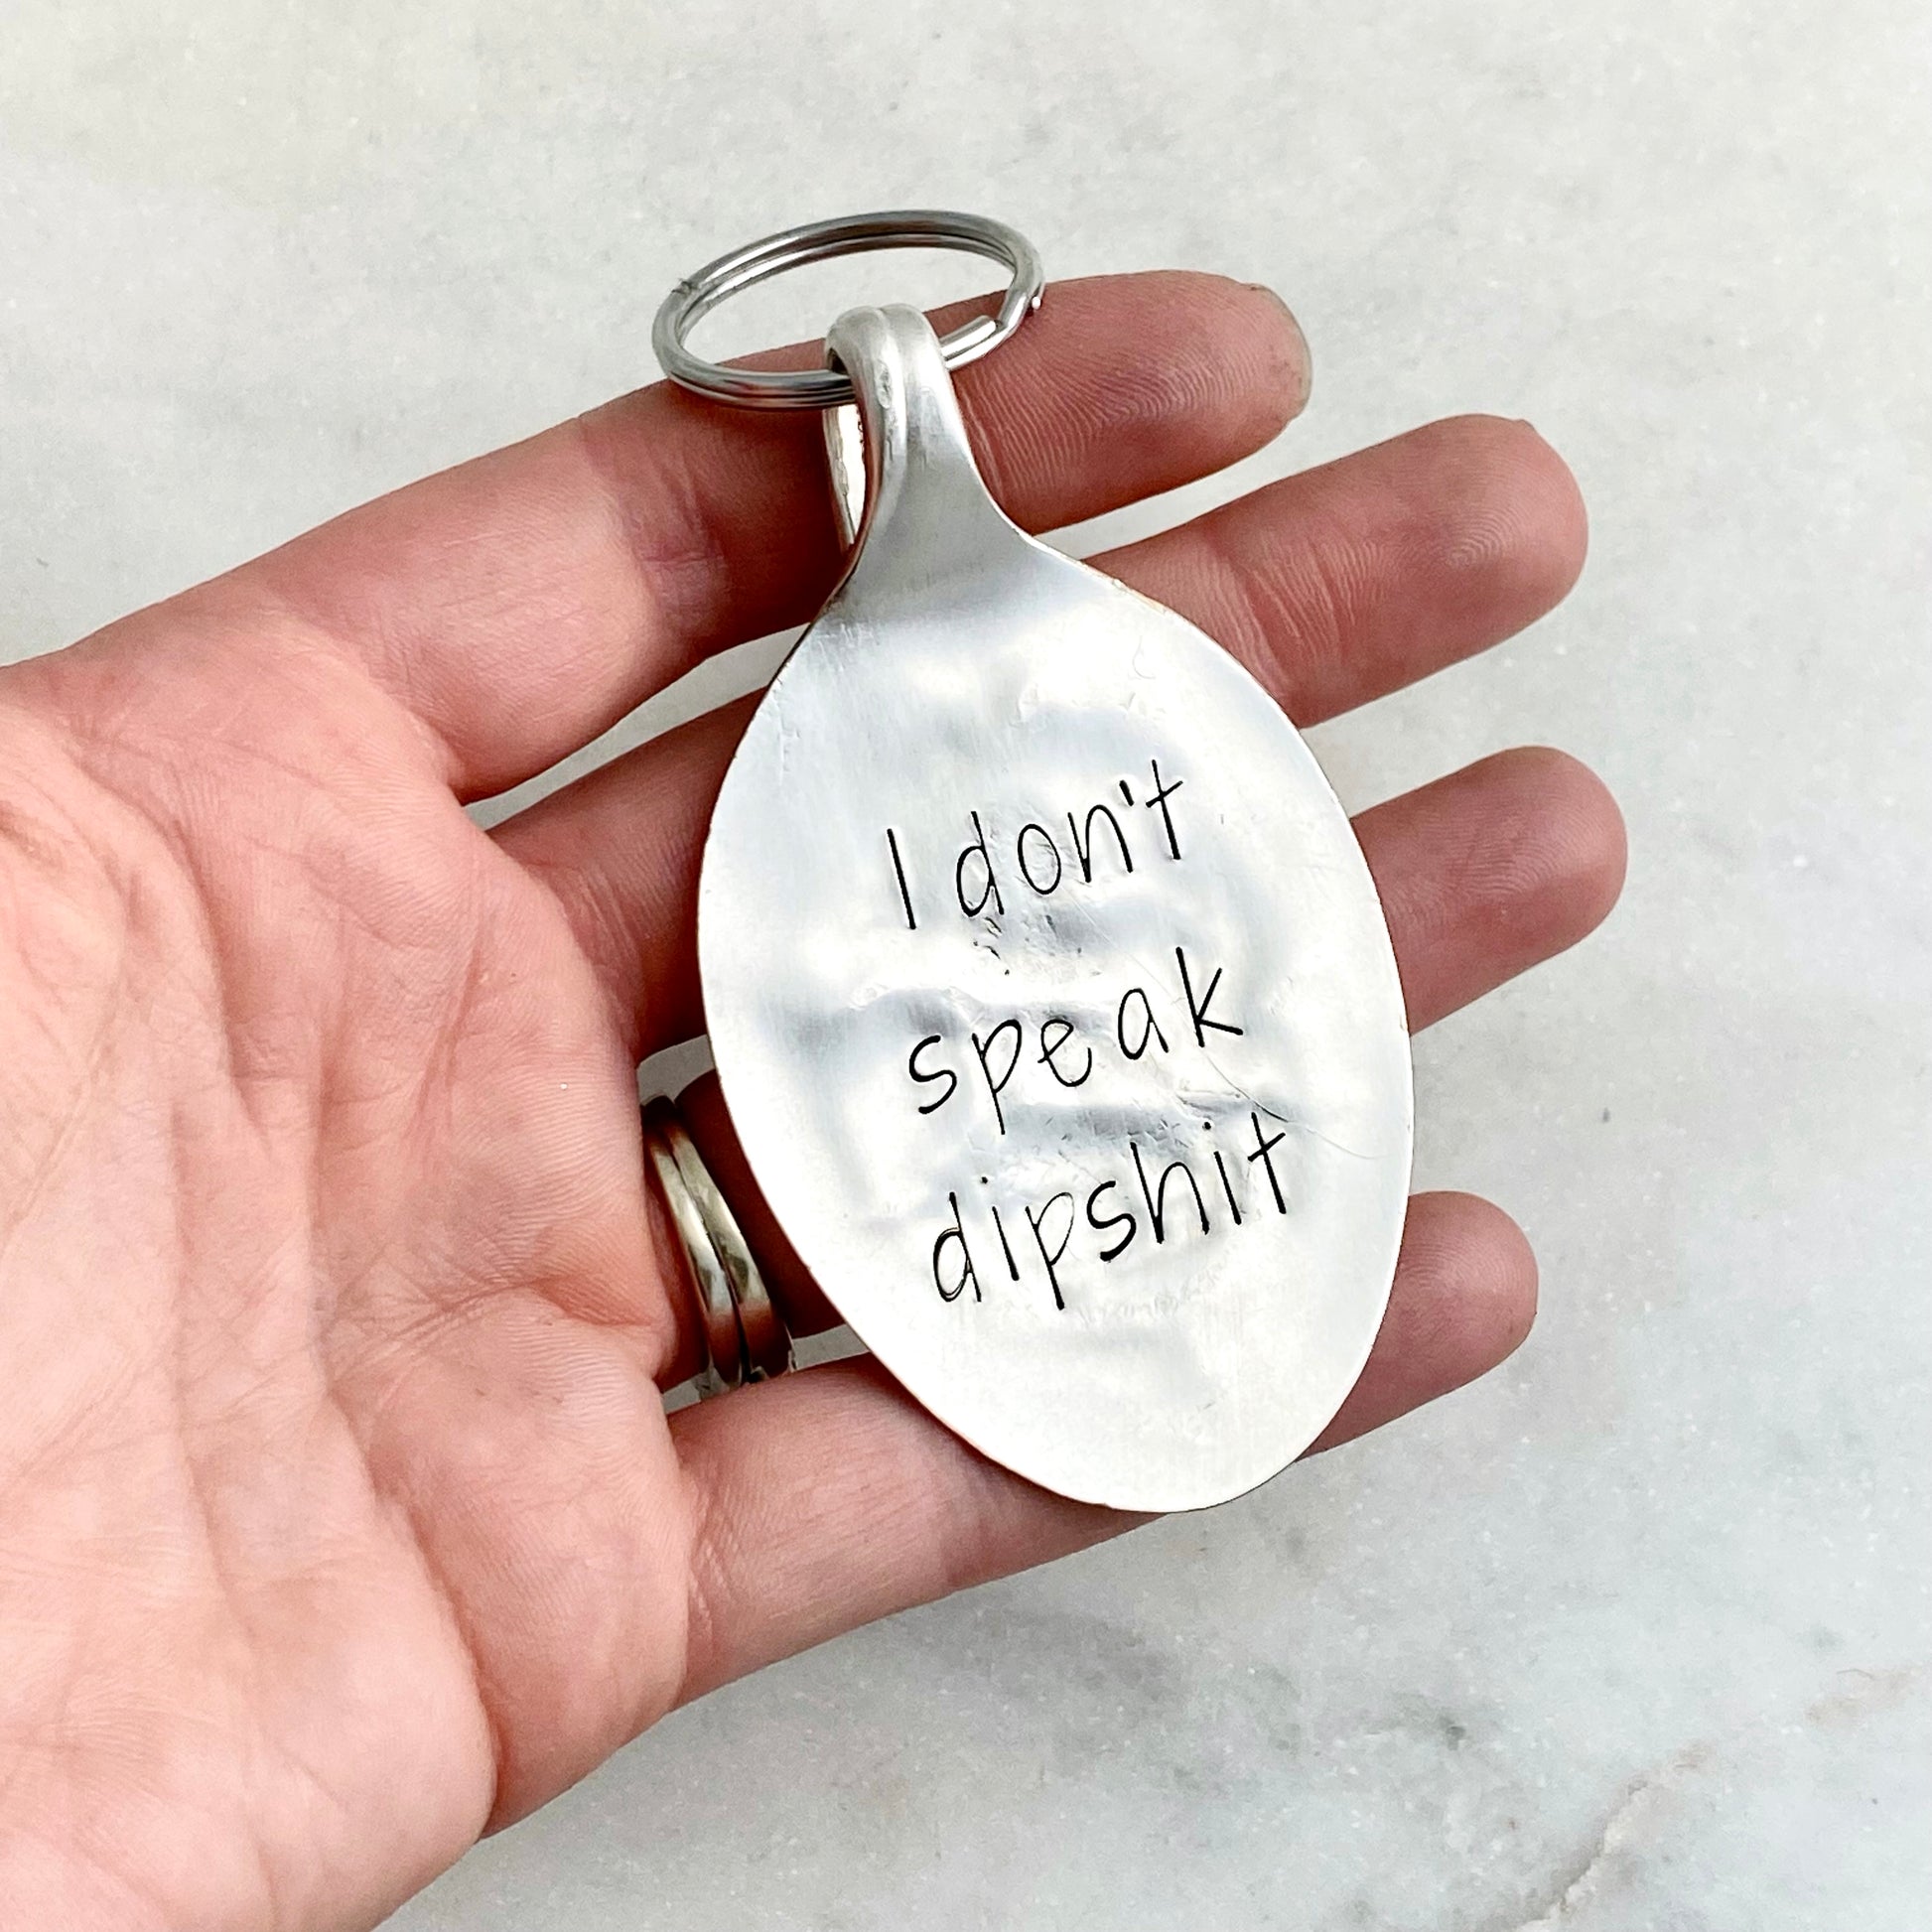 I Don't Speak Dipshit, Hand Stamped Vintage Spoon Keychain Keychains callistafaye   